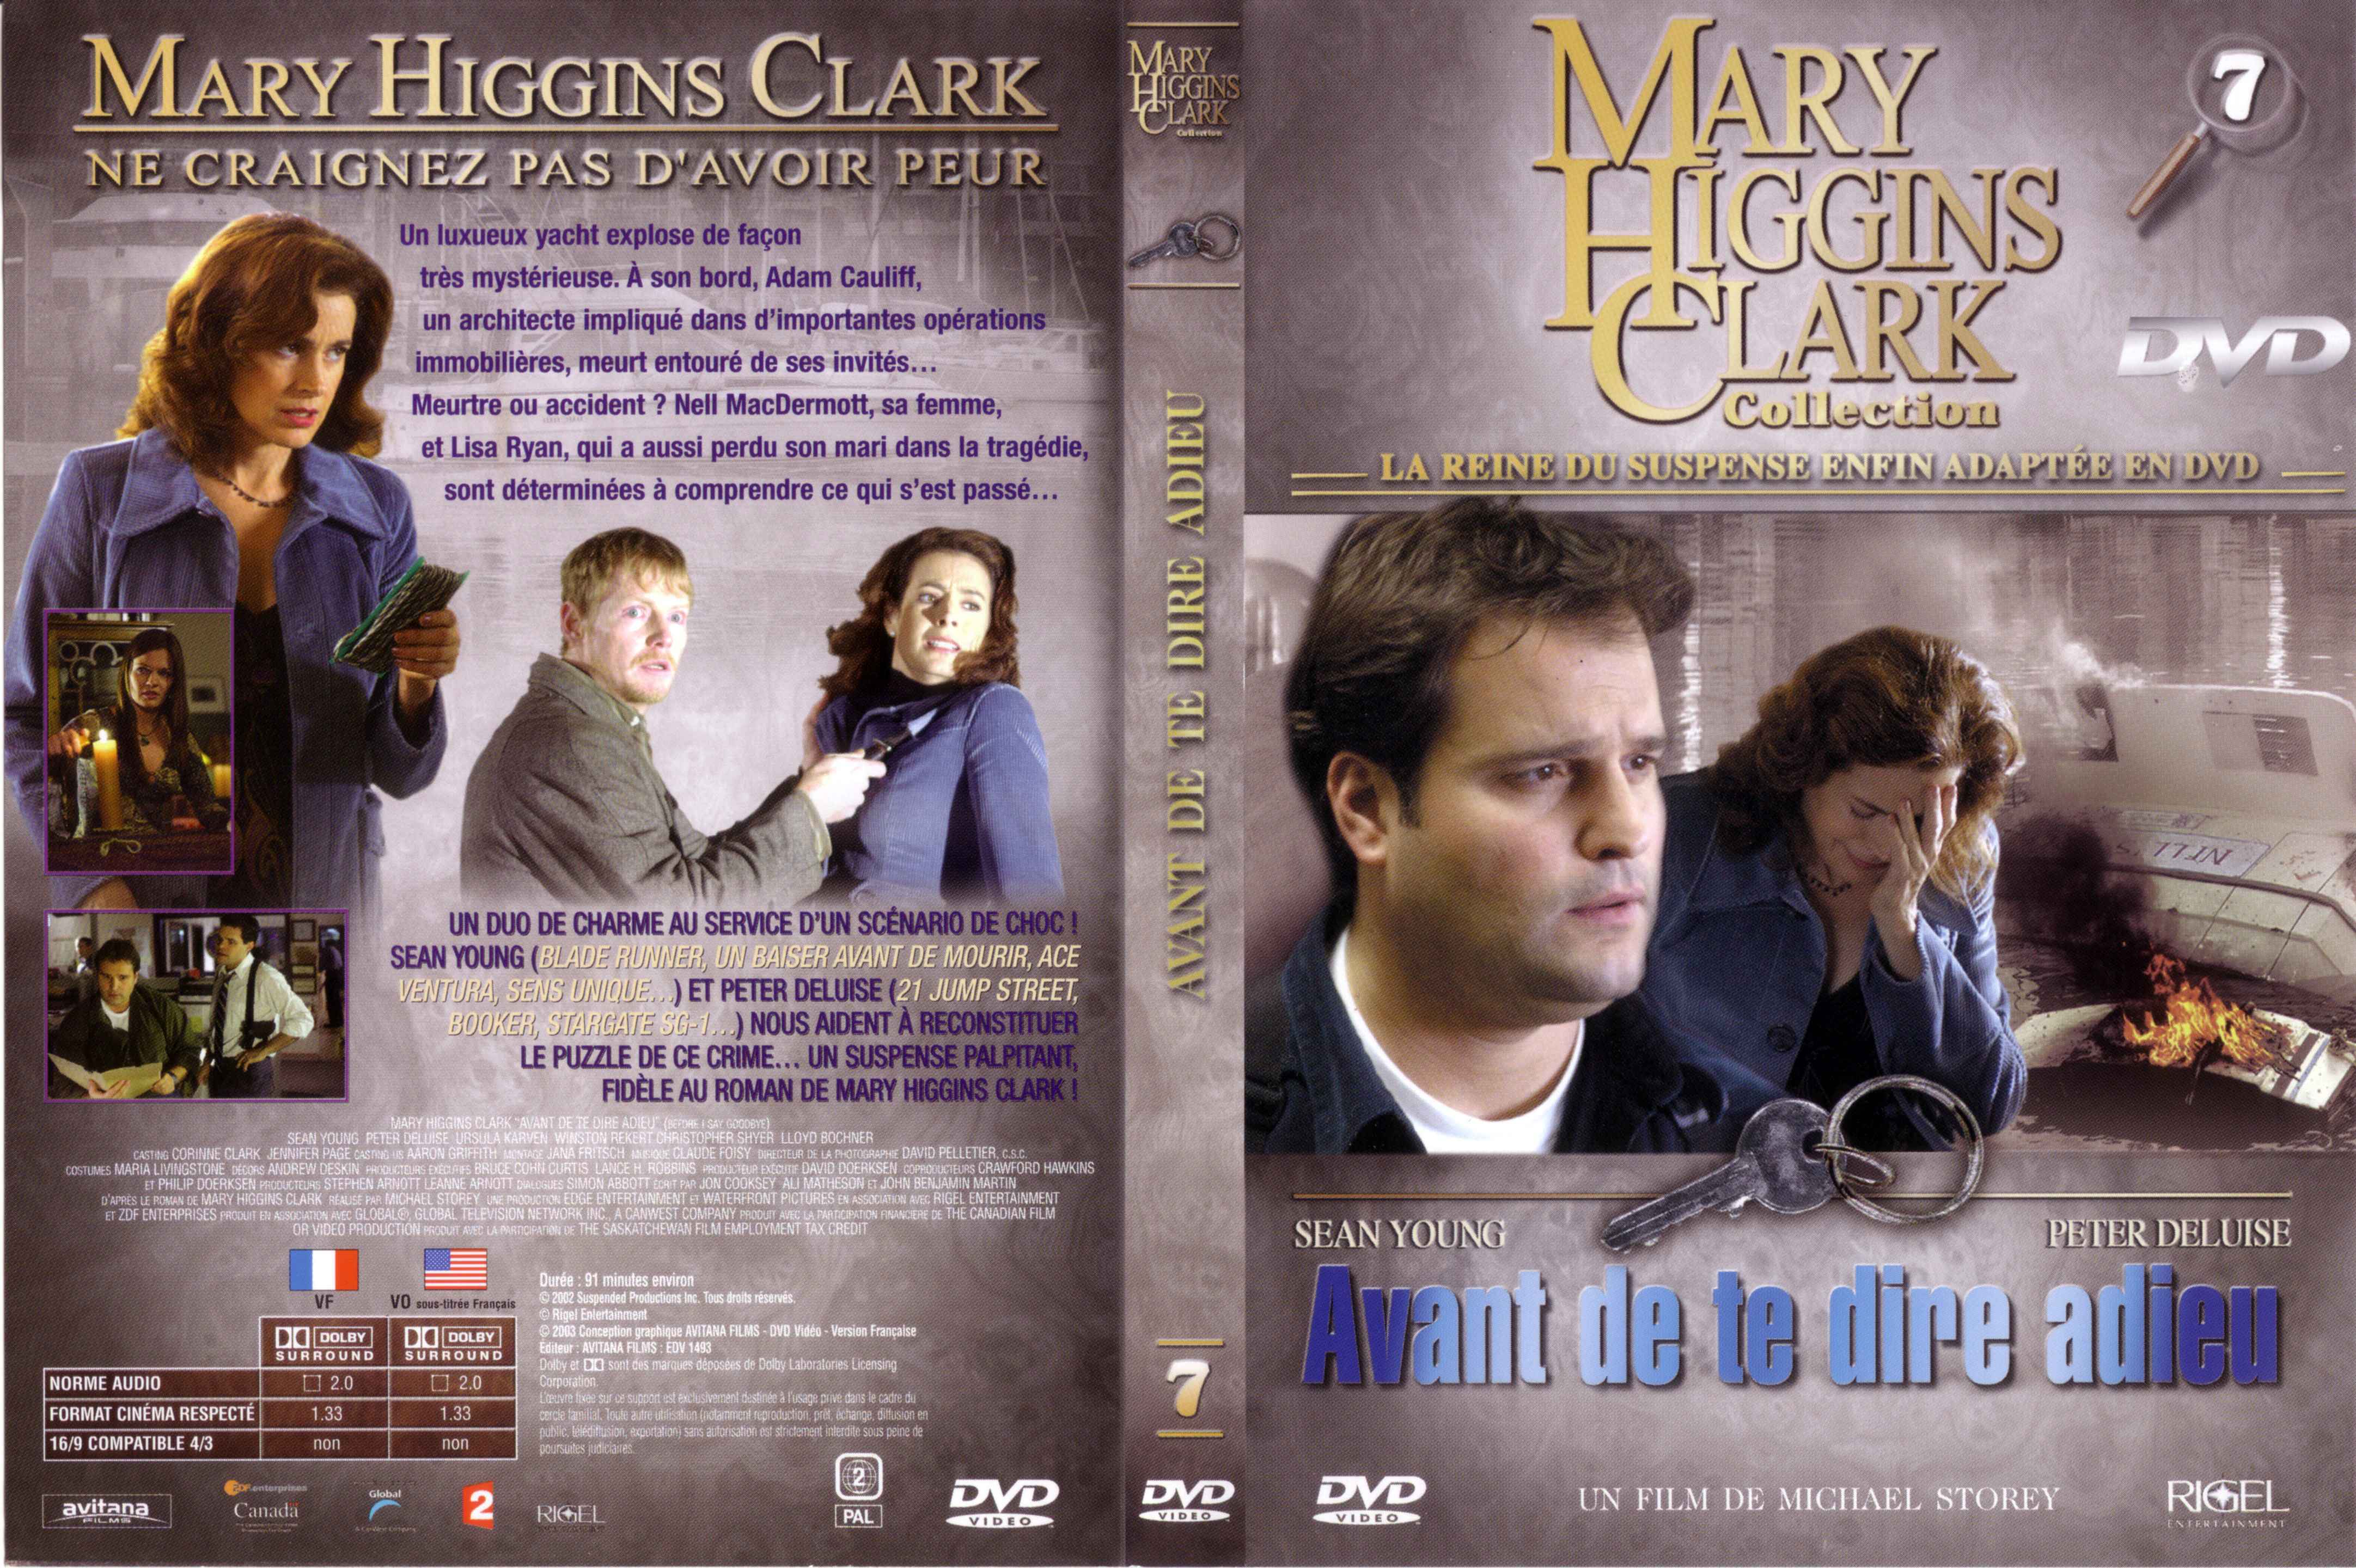 Jaquette DVD Mary Higgins Clark vol 07 - Avant de te dire adieu